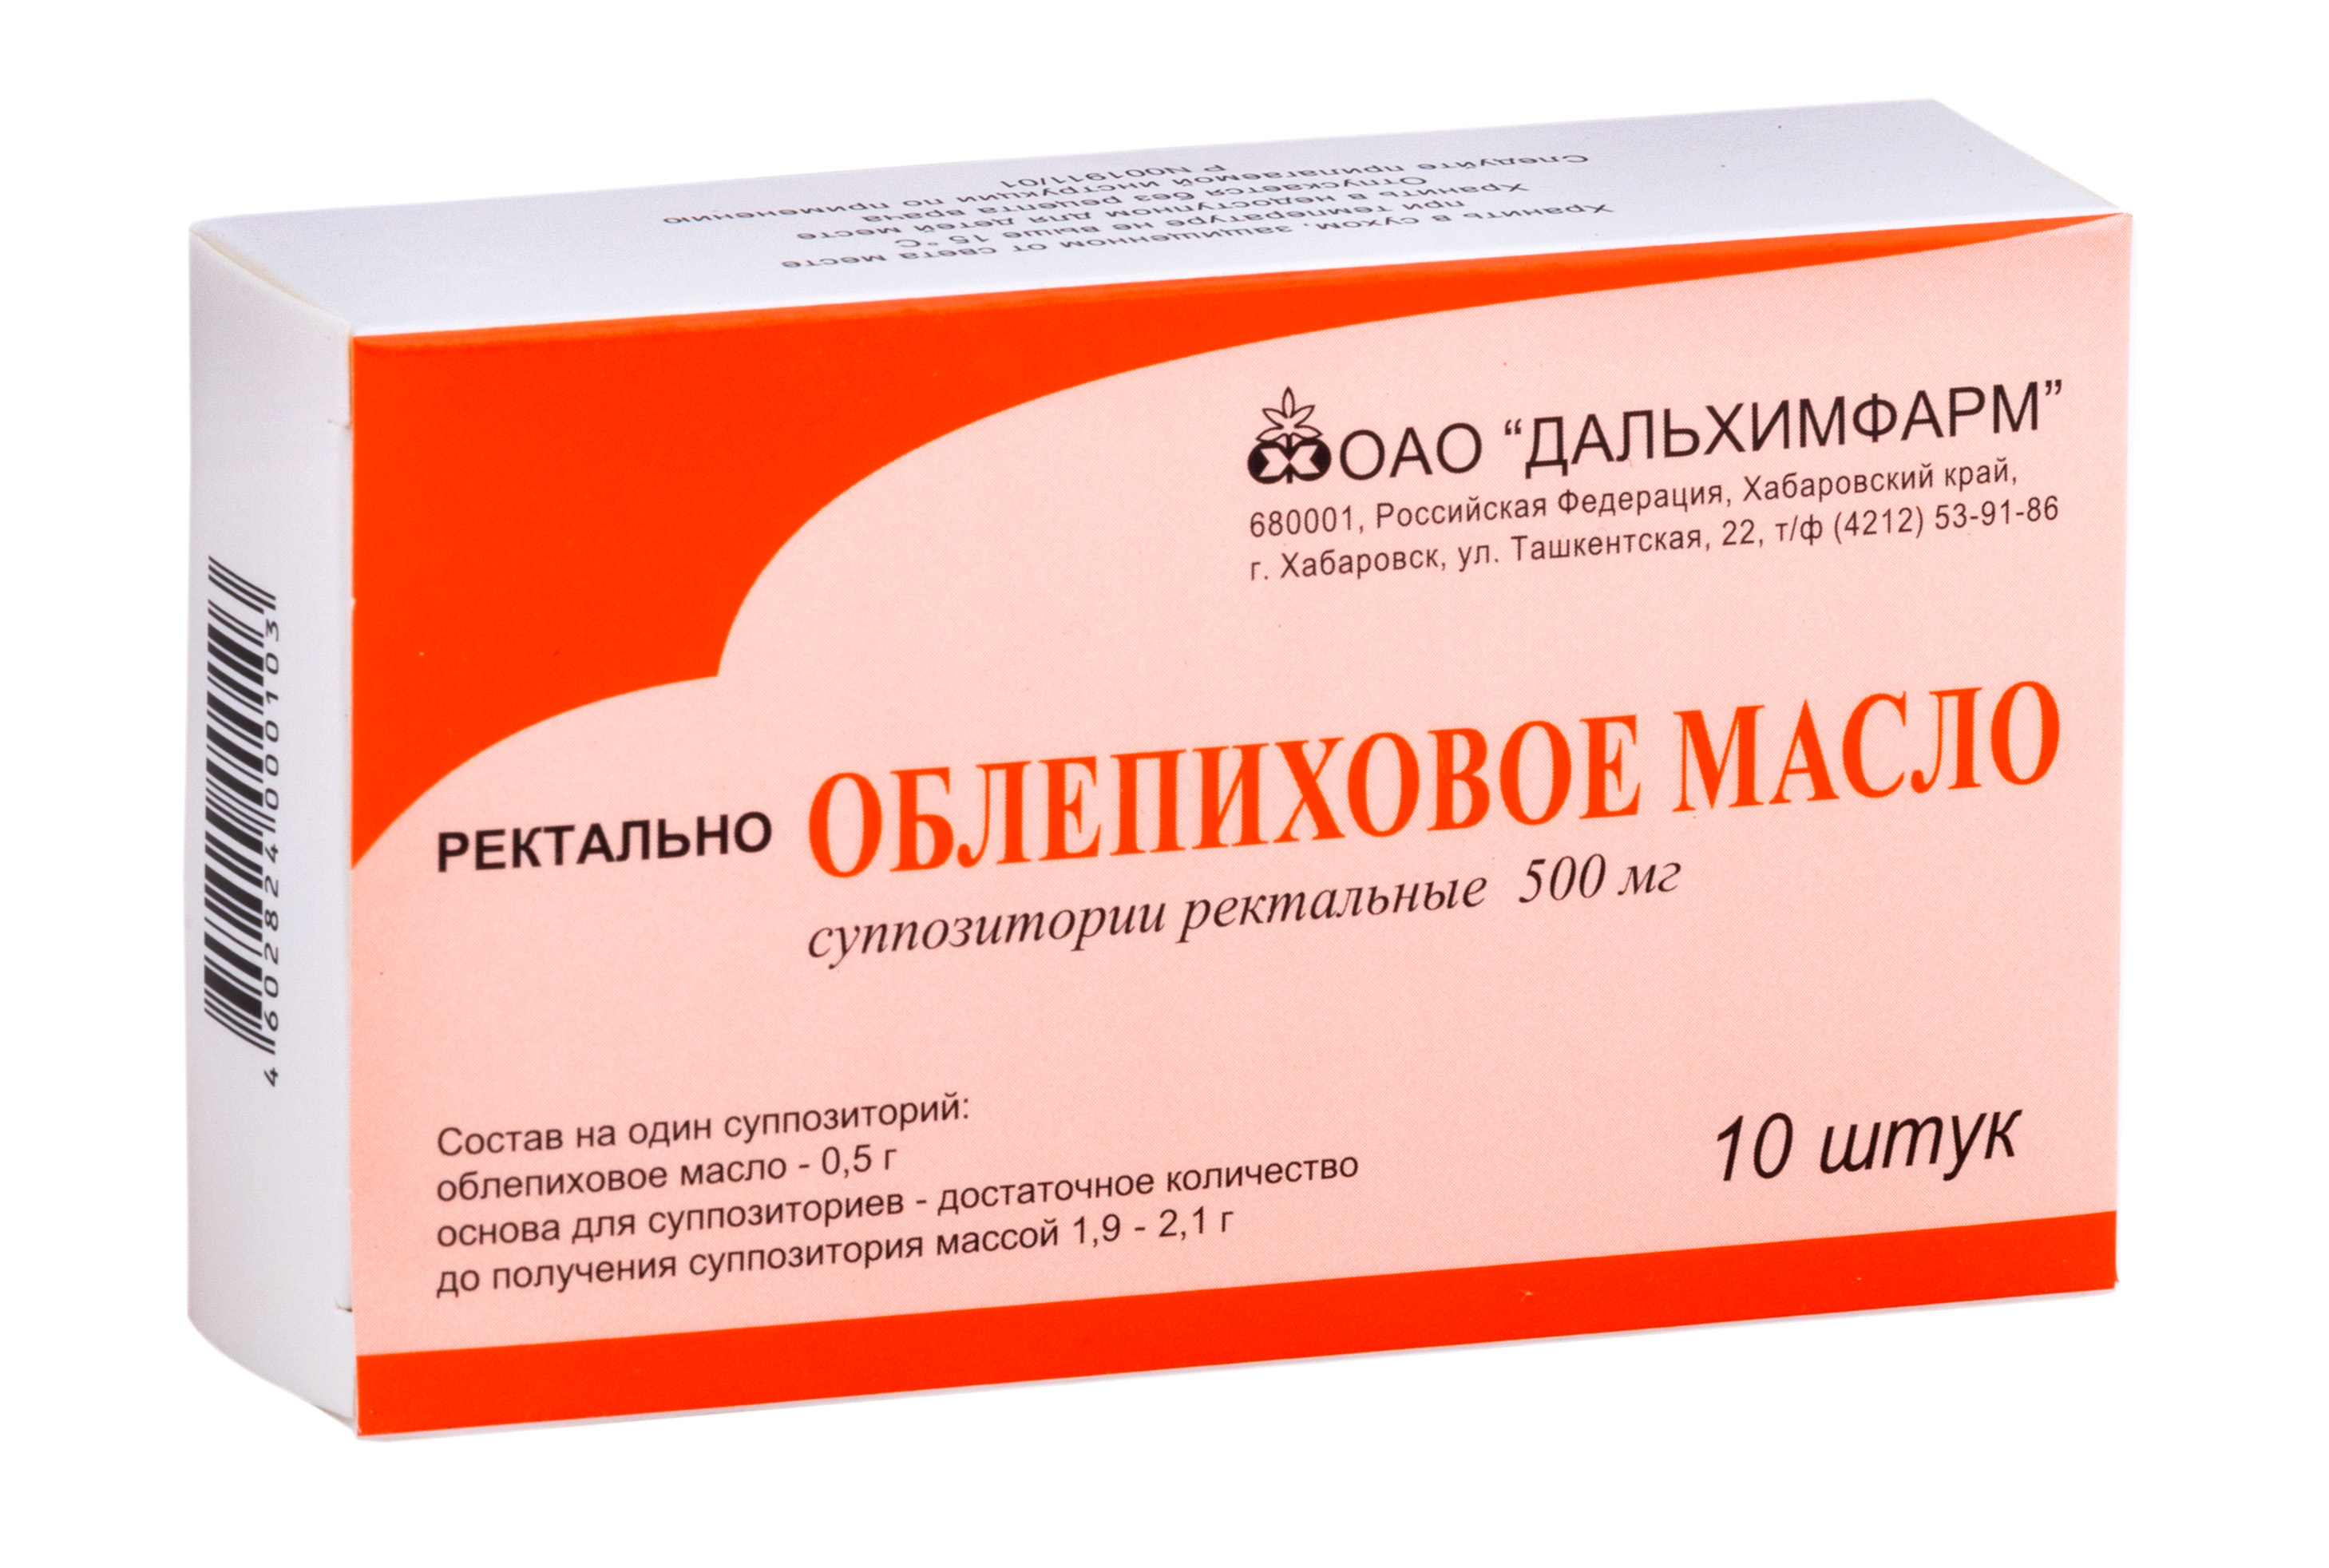 Облепиховое масло, суппозитории ректальные 500 мг (Дальхимфарм), 10 шт.